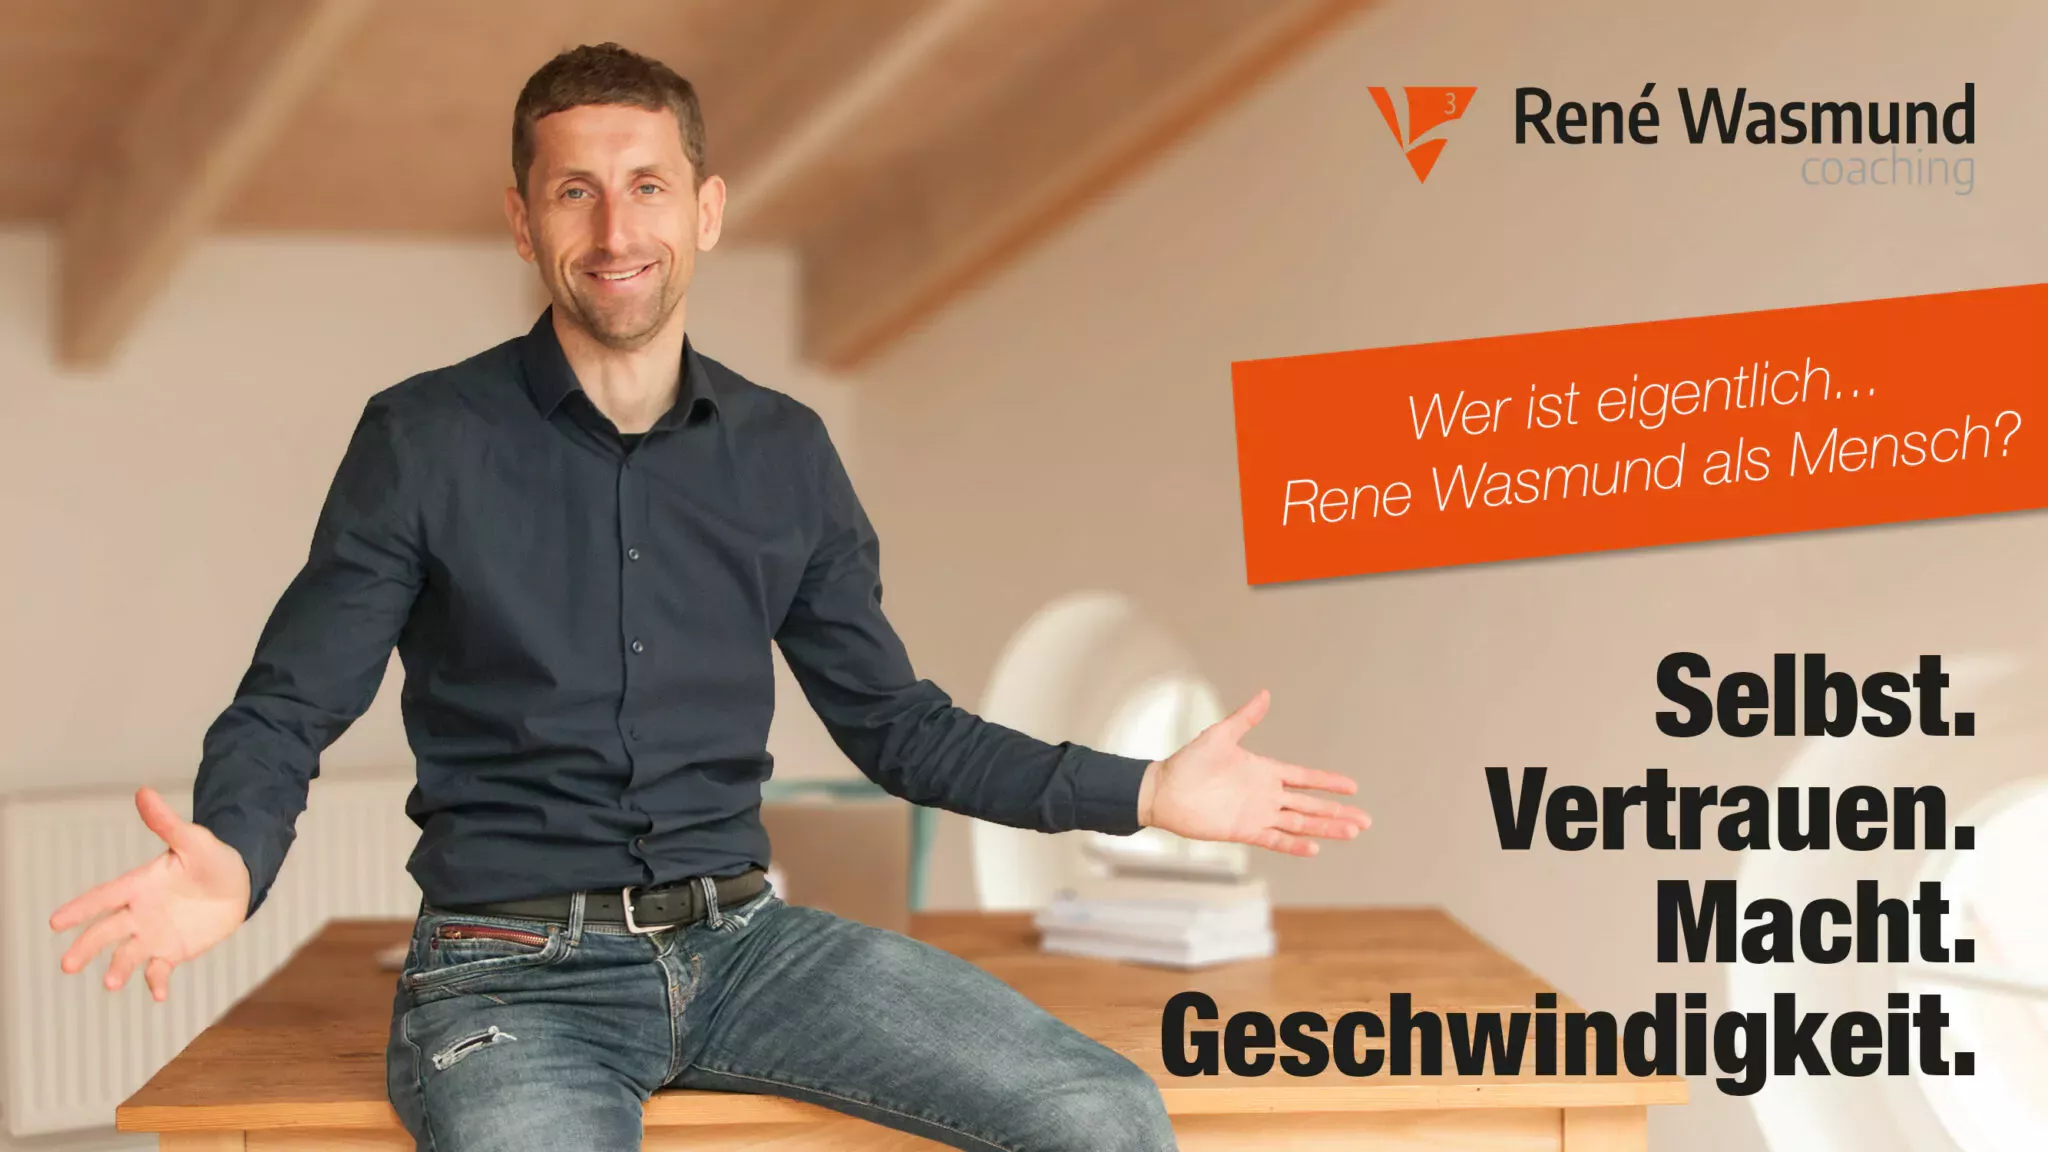 WER IST EIGENTLICH… RENE WASMUND ALS Mensch? - L3 Coaching René Wasmund